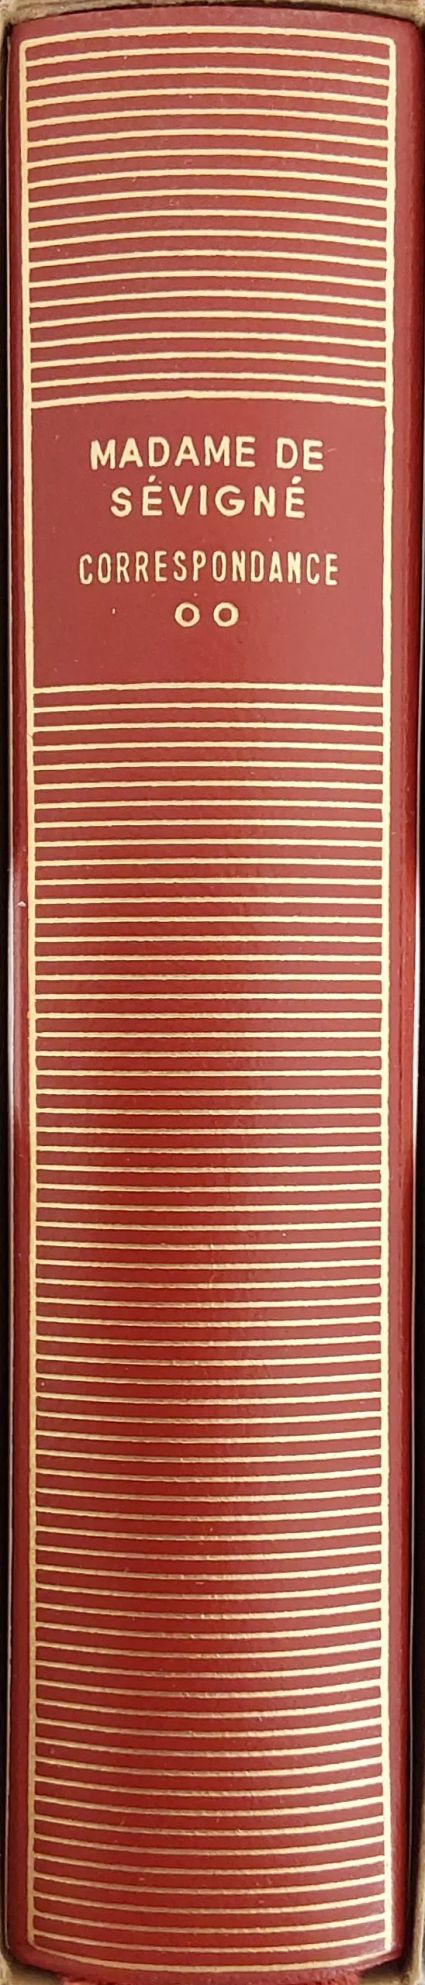 Volume 112 de Madame de Sévigné dans la bibliothèque de la Pléiade.